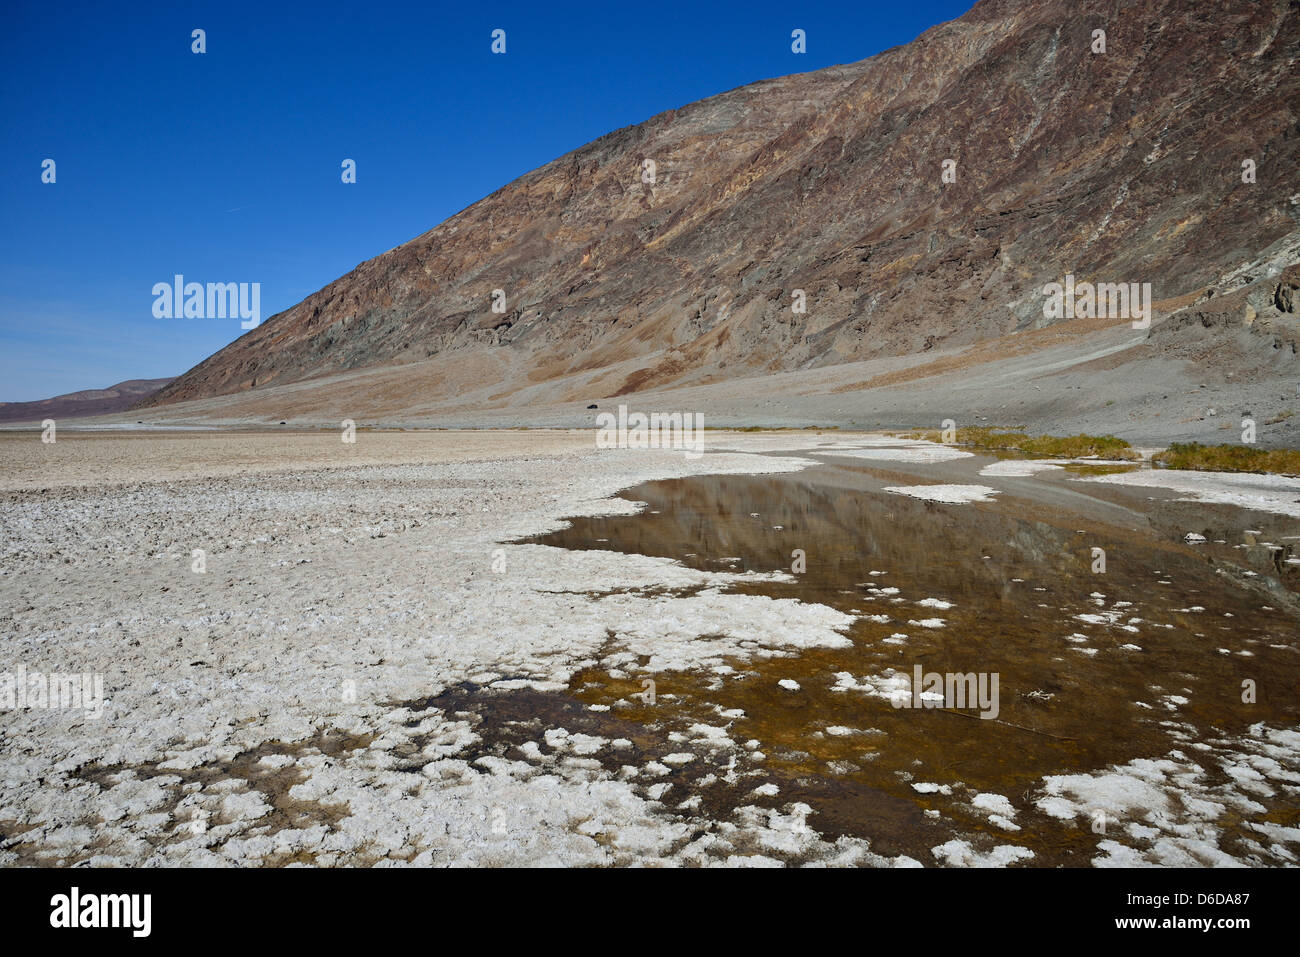 Los cristales de sal que crece en un estanque de agua salada en la cuenca Badwater. El Parque Nacional Valle de la Muerte, California, Estados Unidos. Foto de stock